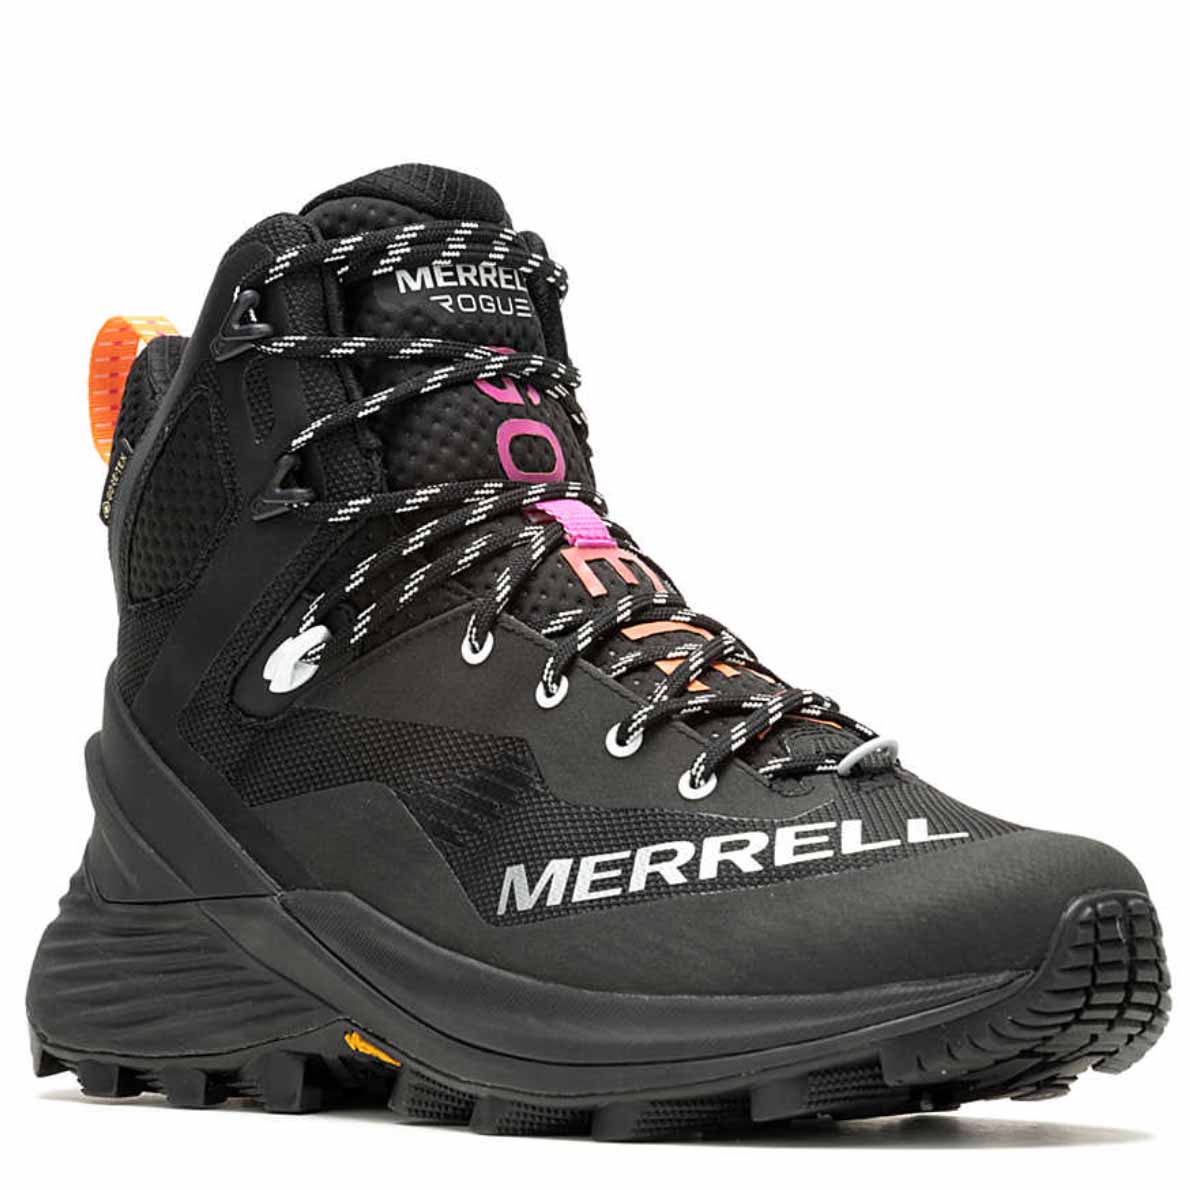 Black Rogue Hiker Mid GORE-TEX boots